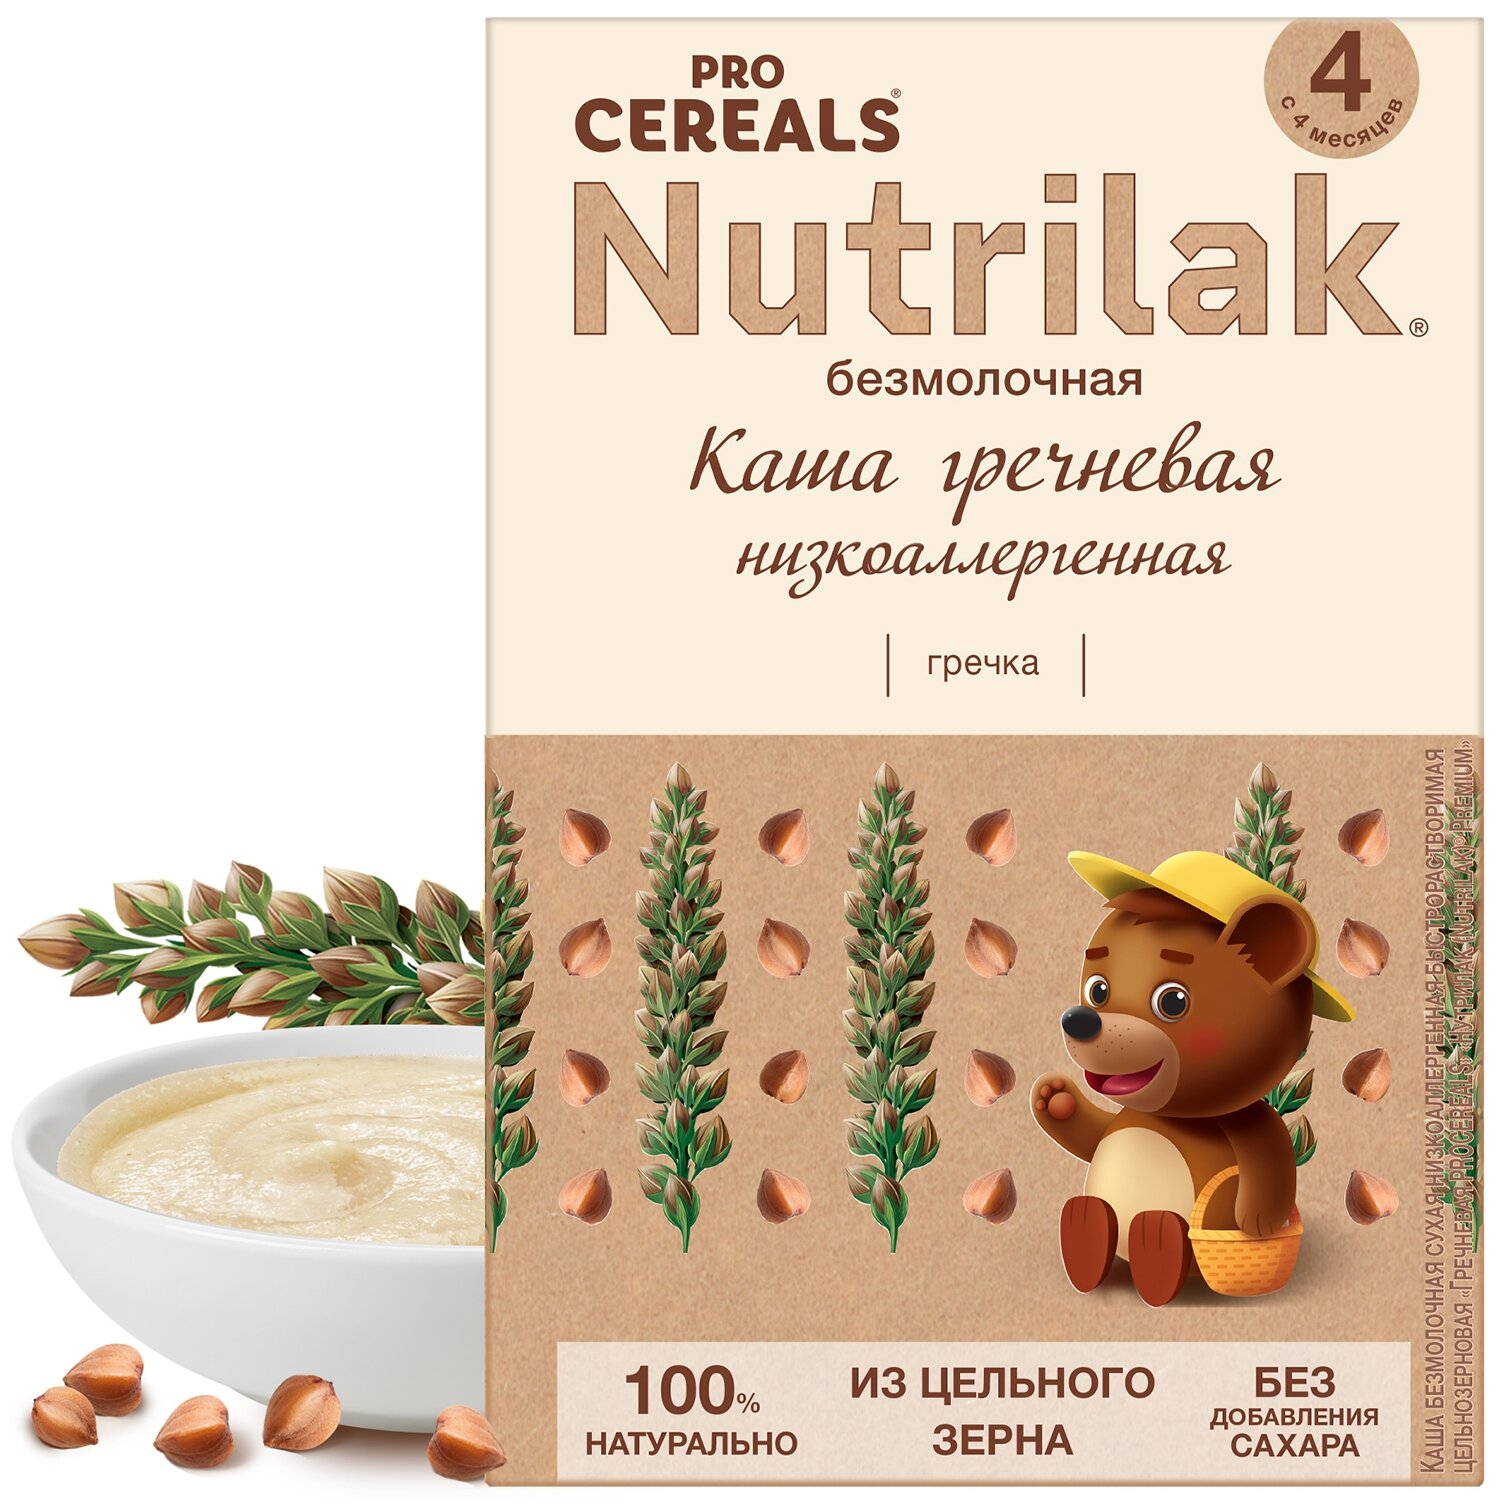 Каша гречневая Nutrilak Premium Pro Cereals цельнозерновая безмолочная, 200гр - фото №1